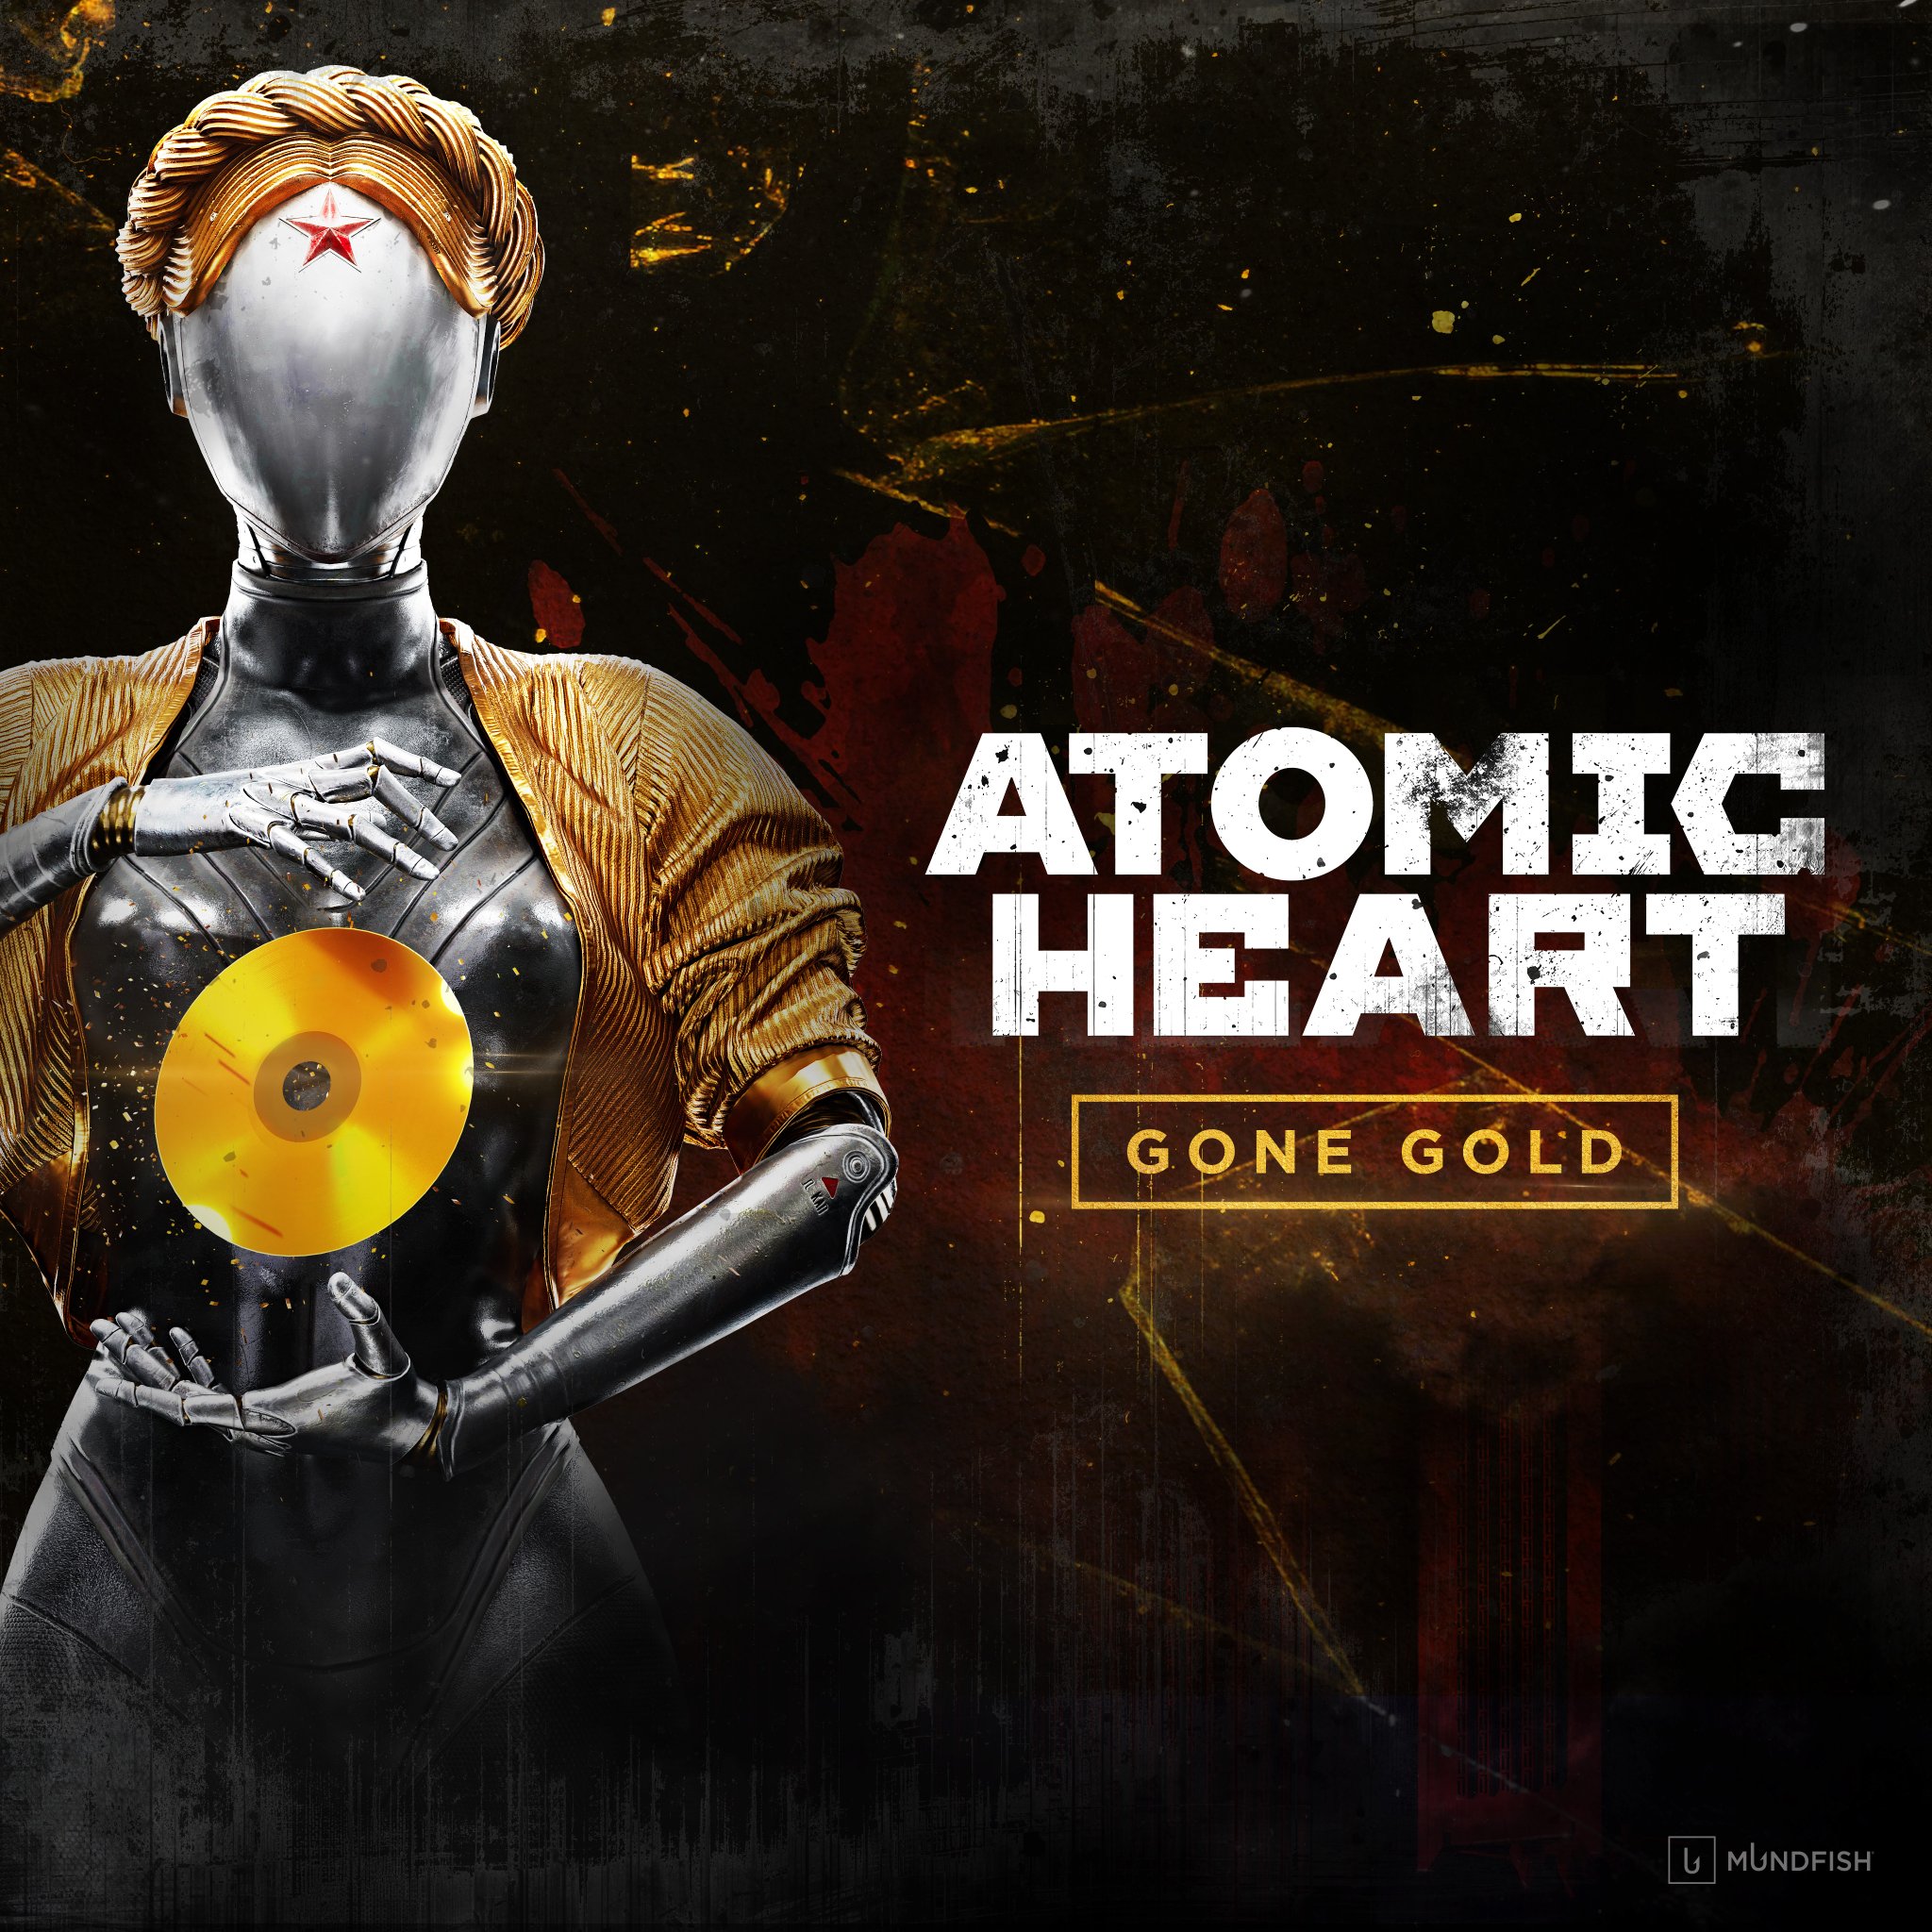 Atomic Heart "ушла на золото", игра выходит 21 февраля в Game Pass: с сайта NEWXBOXONE.RU